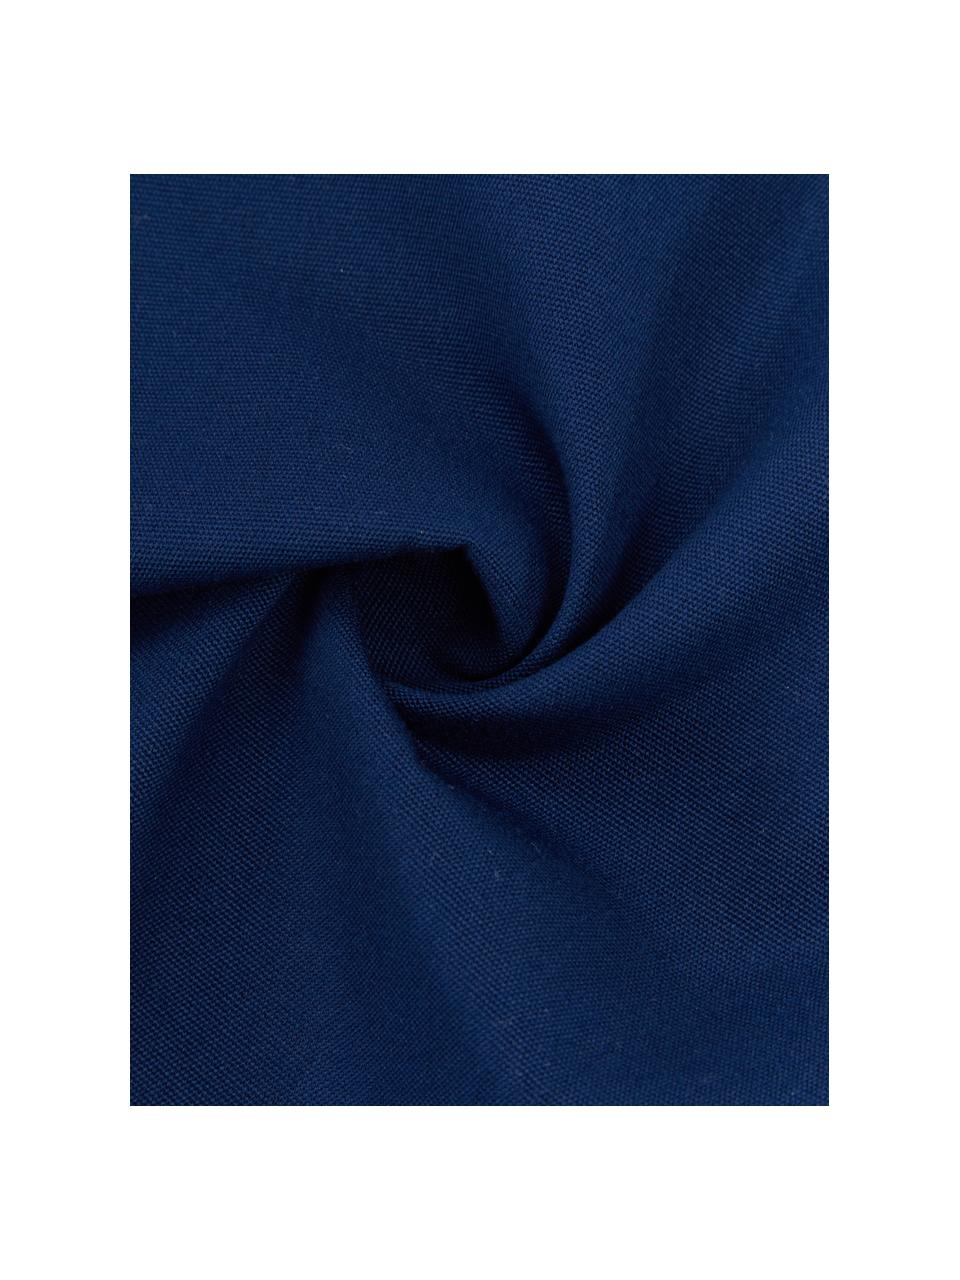 Federa arredo da esterno blu scuro Blopp, Dralon (100% poliacrilico), Blu scuro, Larg. 30 x Lung. 47 cm